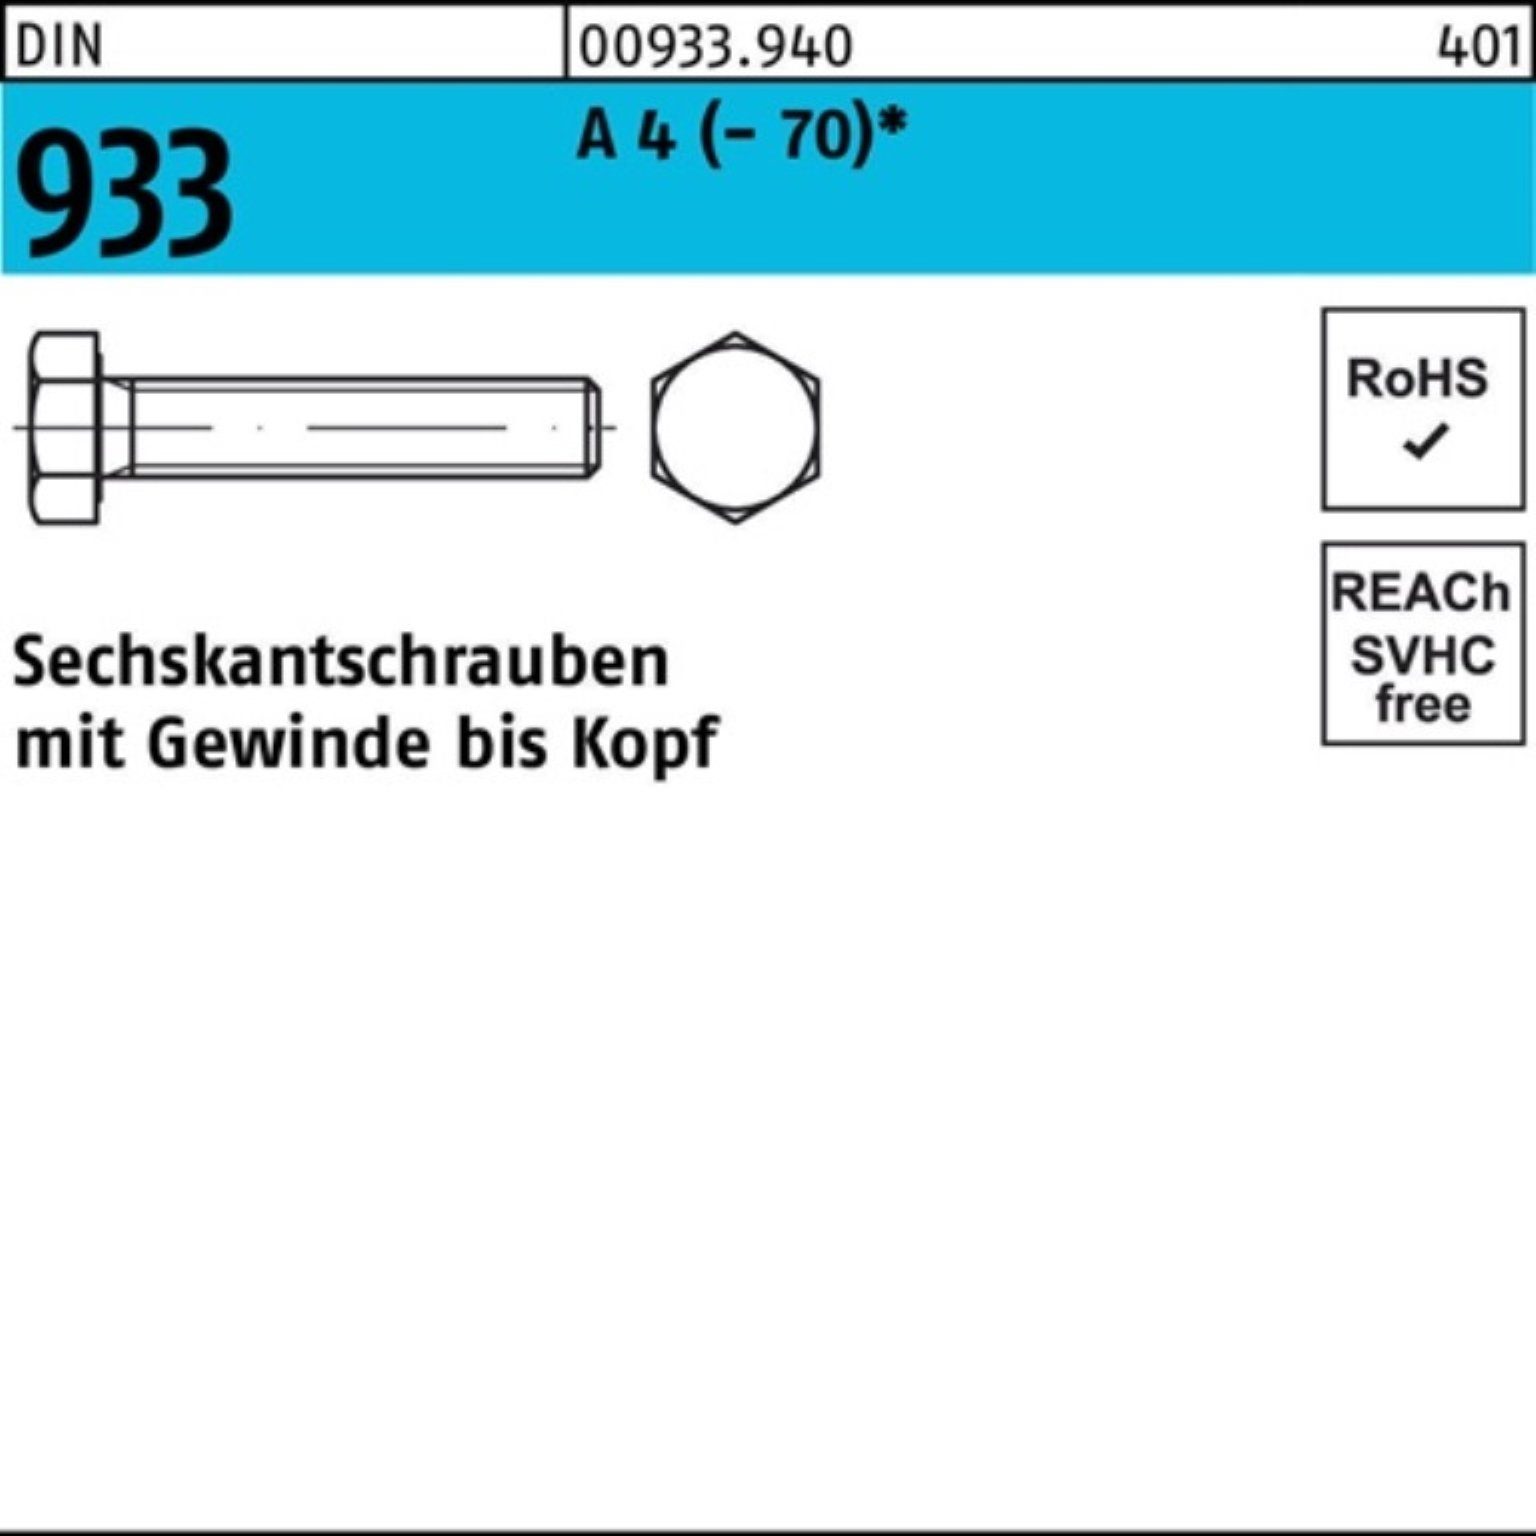 Reyher Sechskantschraube 4 (70) 100 M6x VG 933 Pack DIN 100er D Stück Sechskantschraube A 50